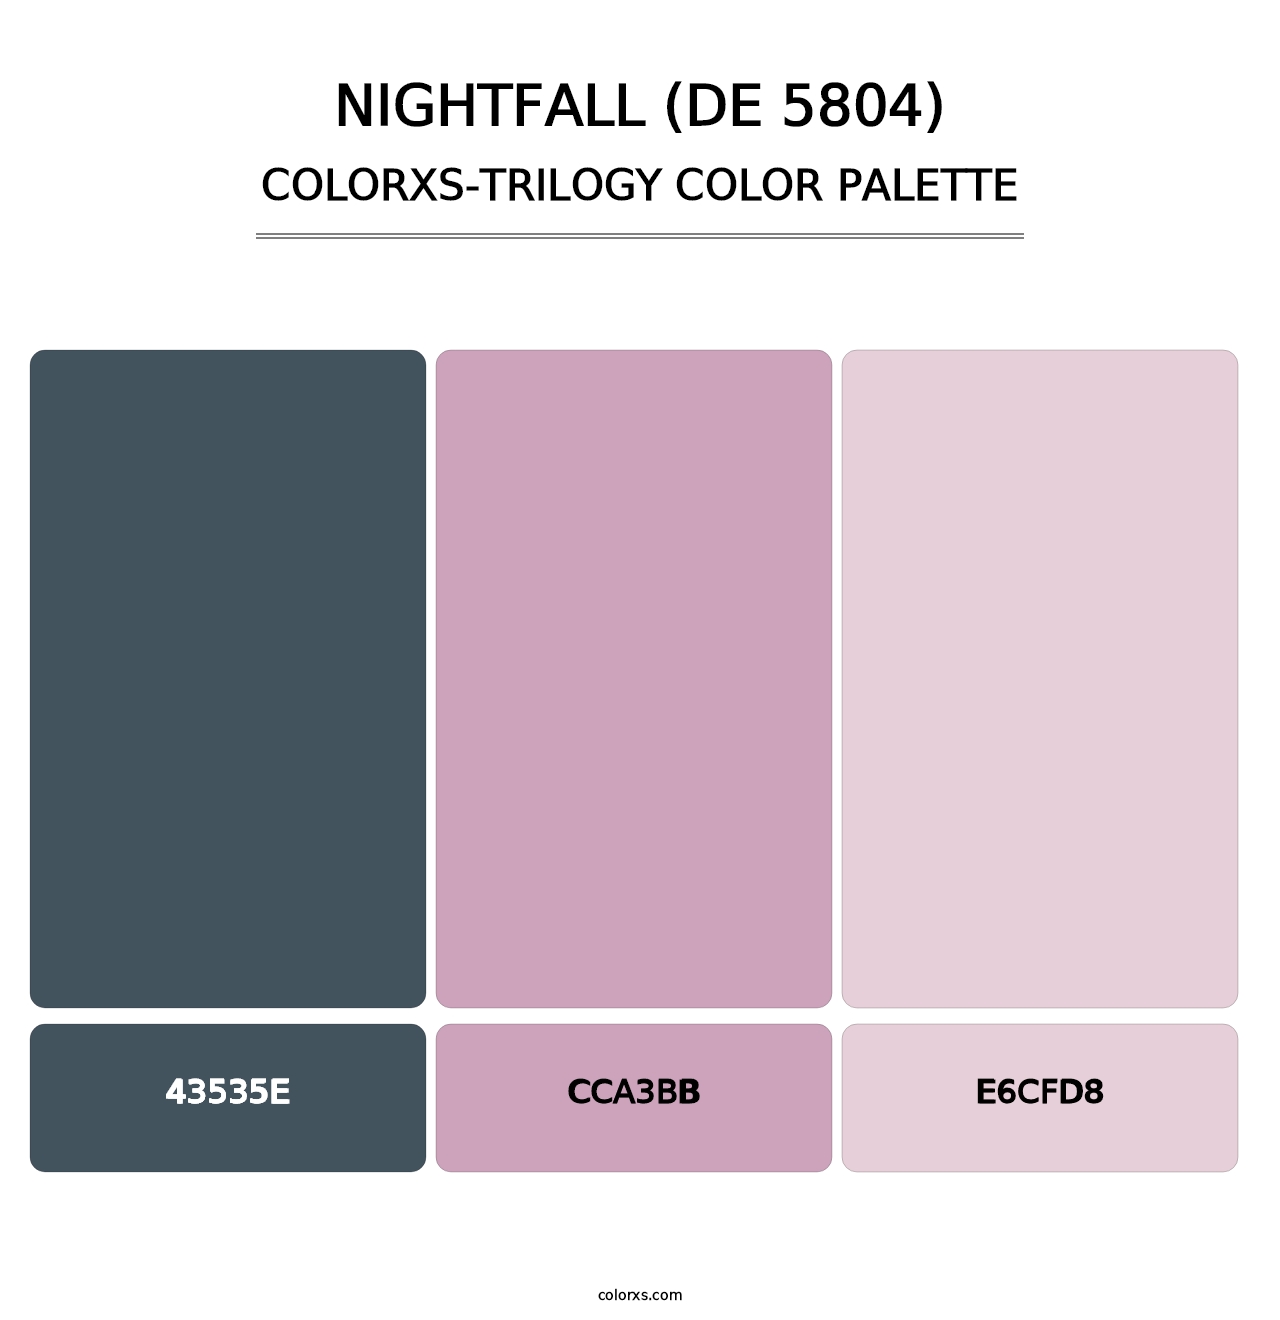 Nightfall (DE 5804) - Colorxs Trilogy Palette